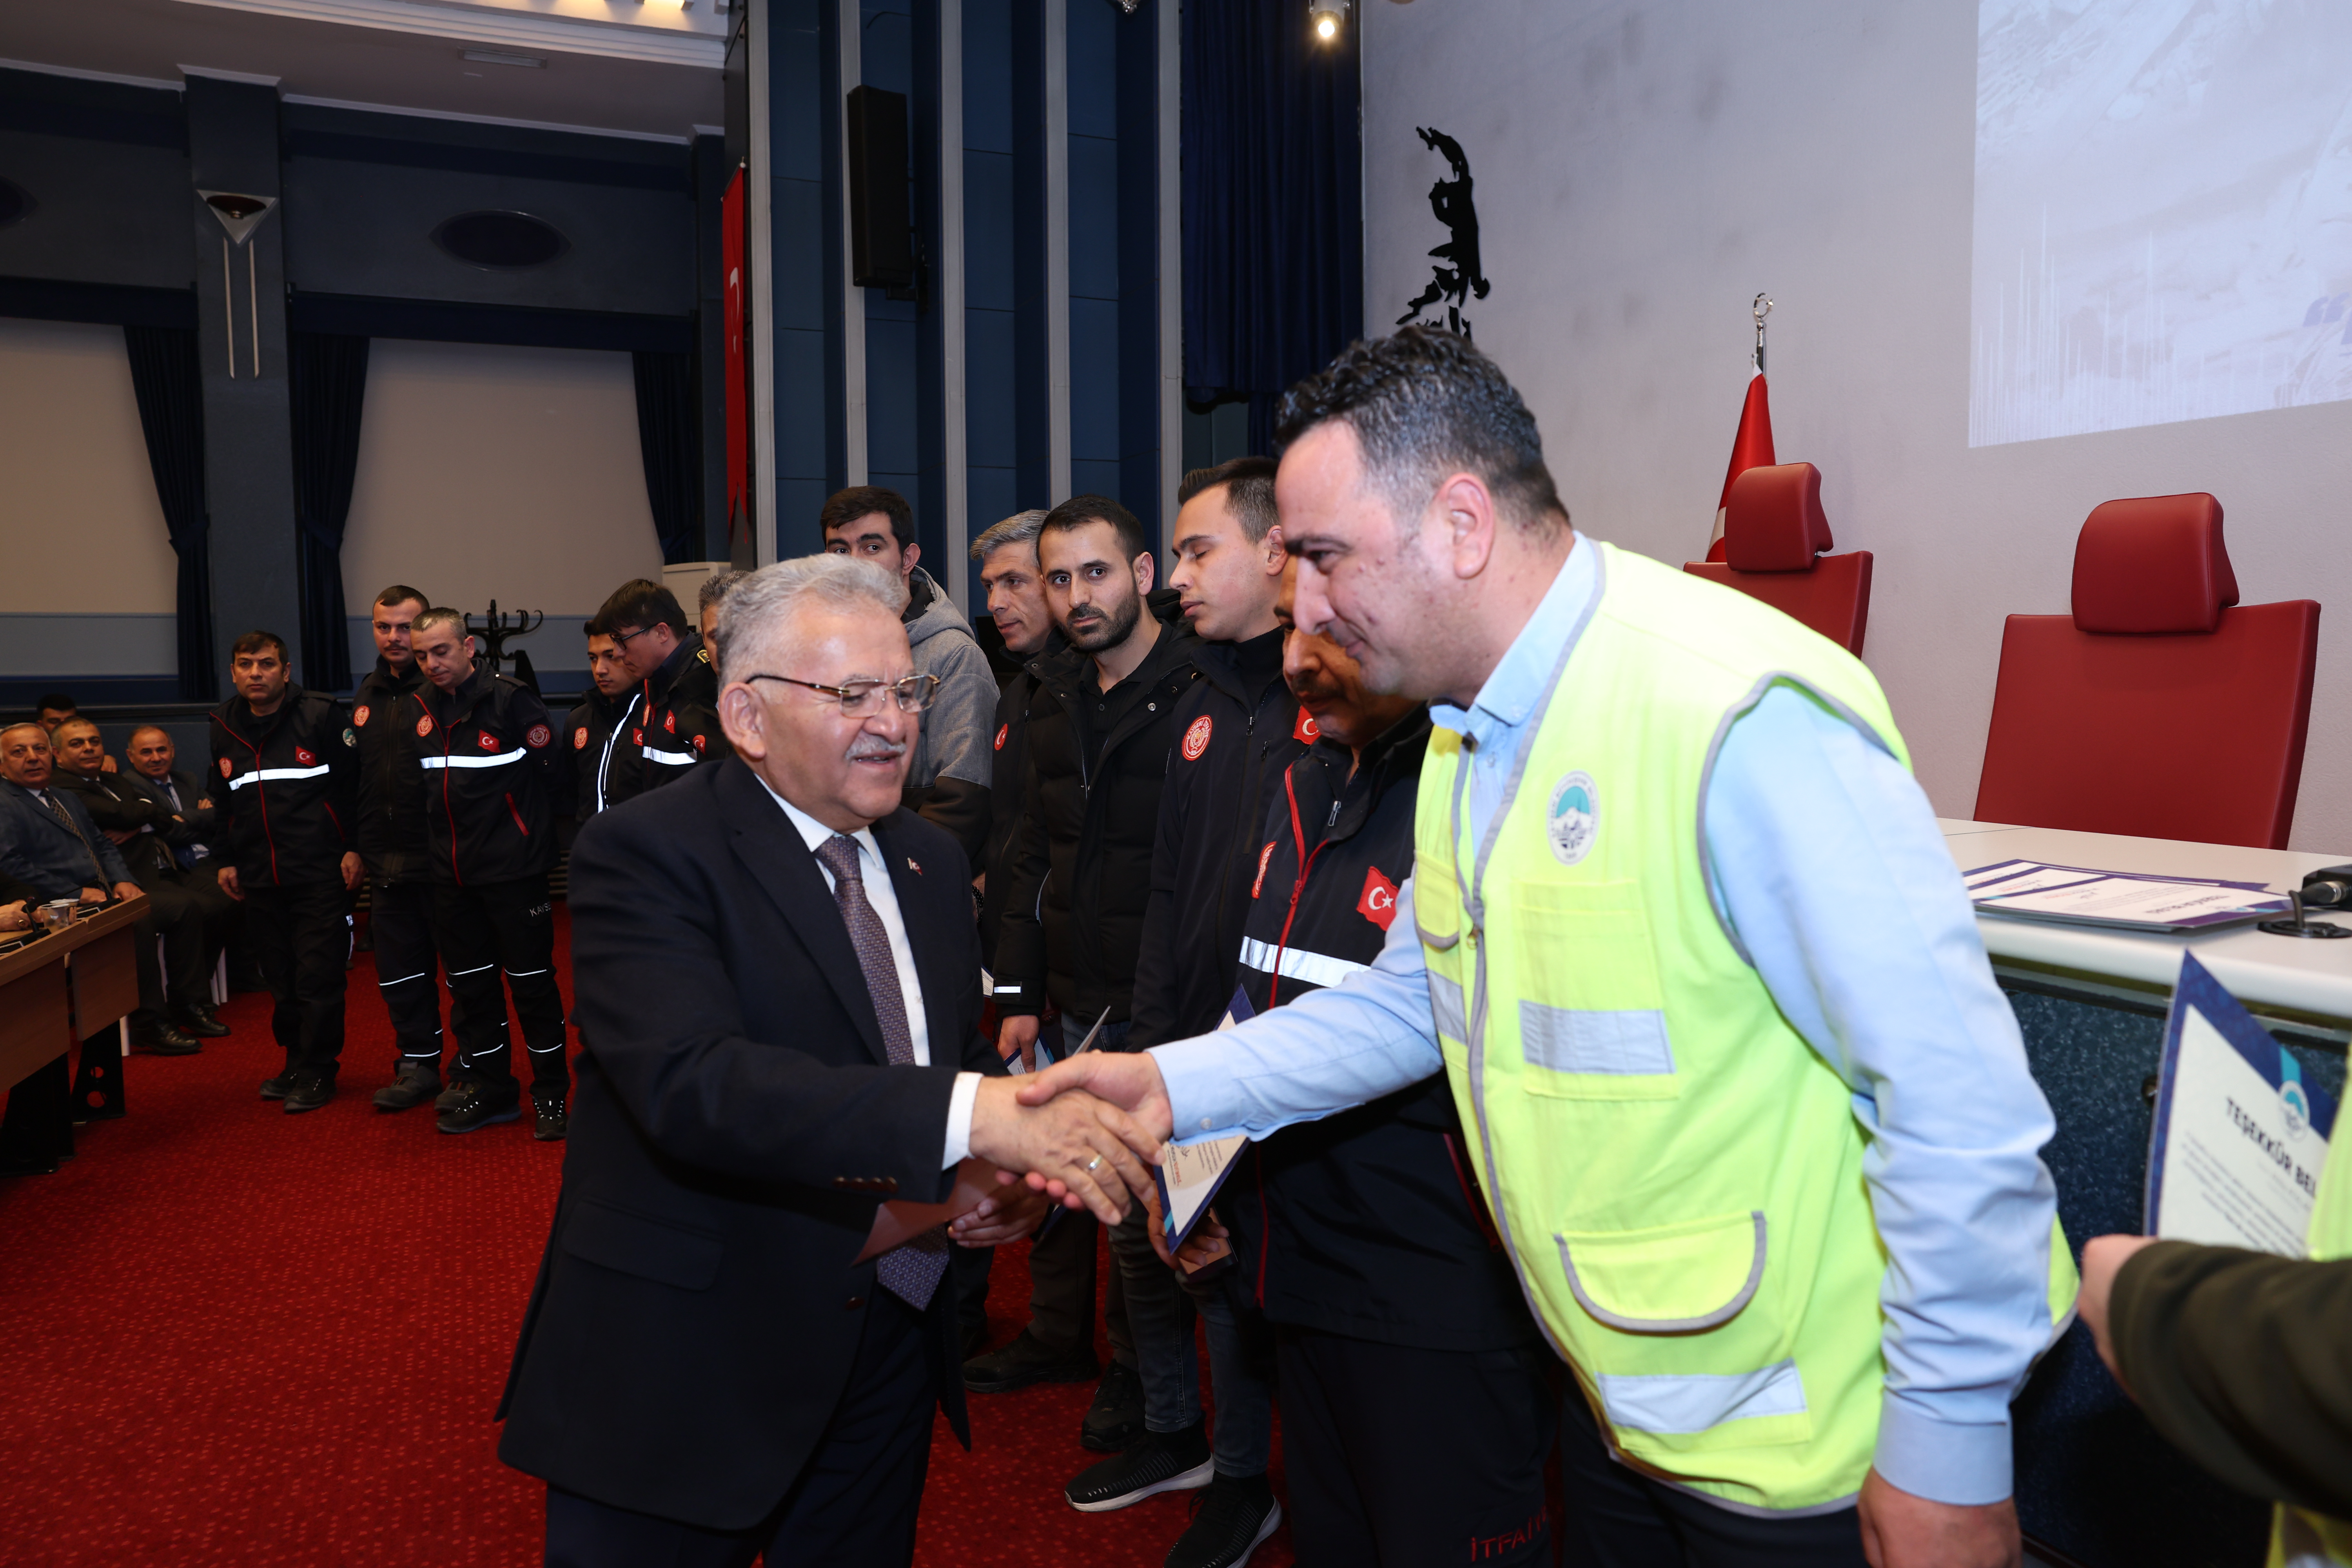 Büyükkılıç: “Kayseri Büyükşehir Belediyesi’nin ekiplerinin hizmetleriyle övünç duyduk”